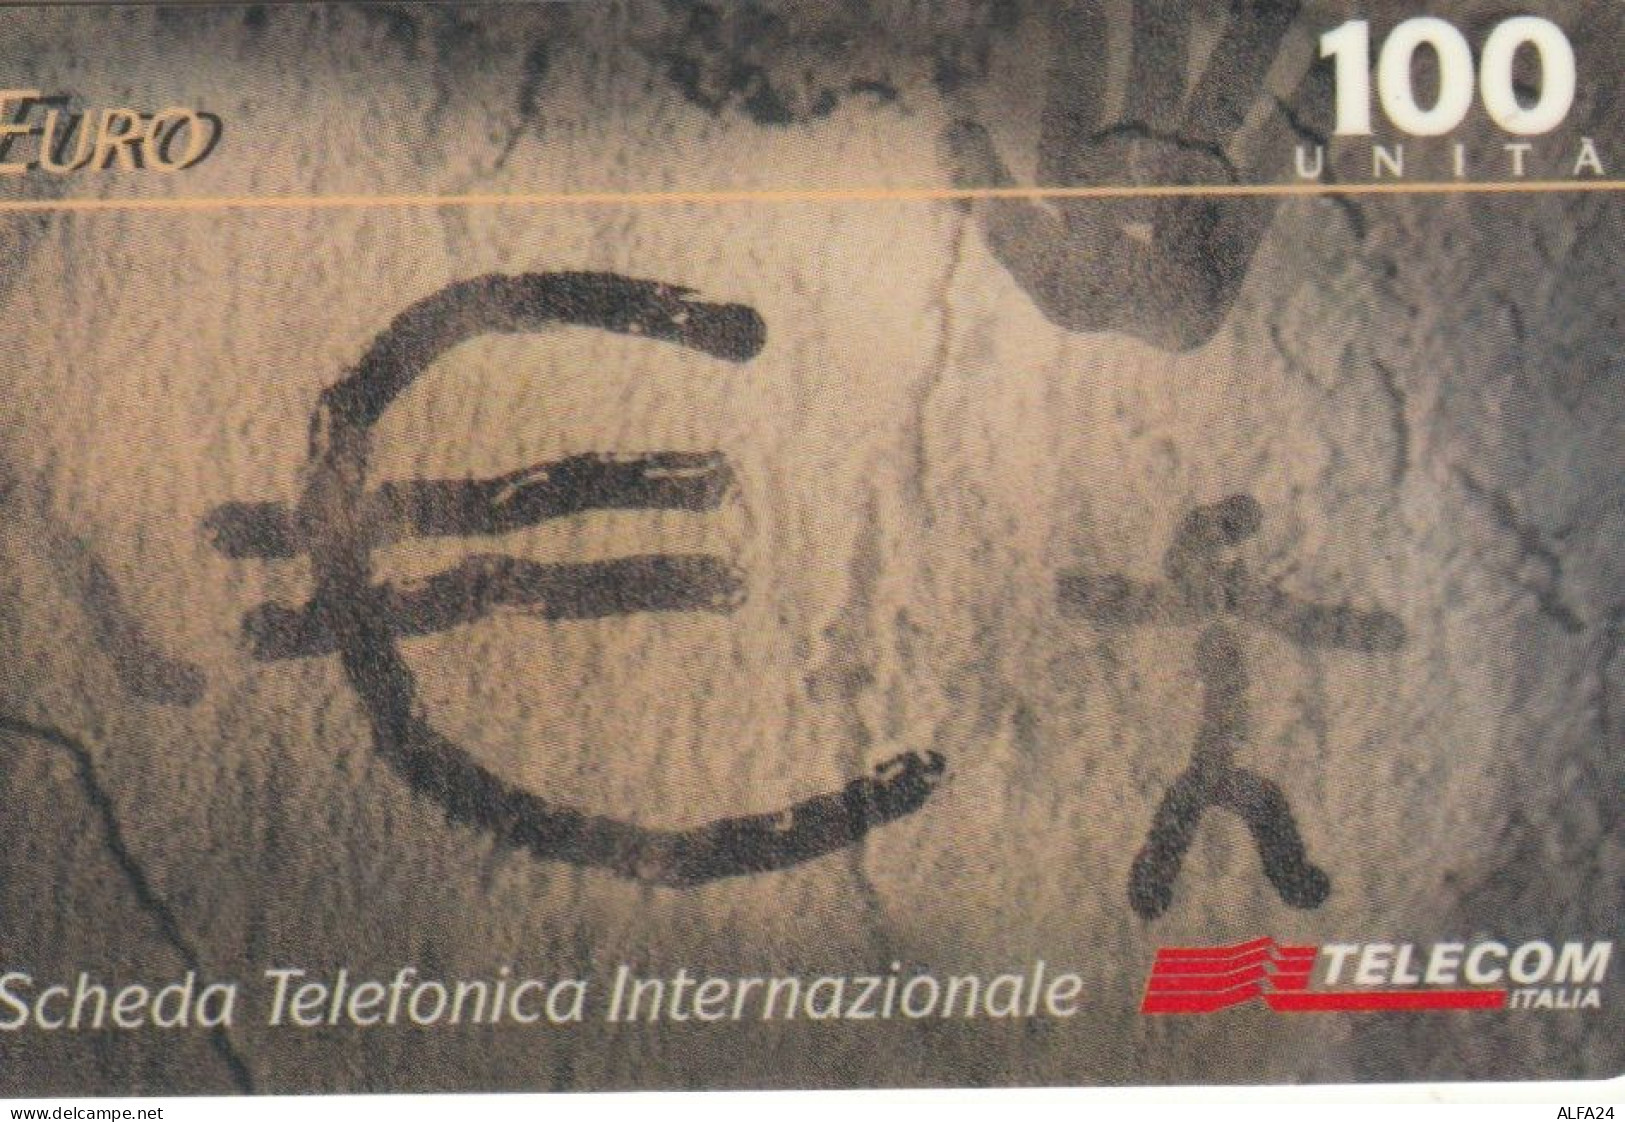 PREPAID PHONE CARD ITALIA 100 U TELECOM EAU (CK3211 - Schede GSM, Prepagate & Ricariche